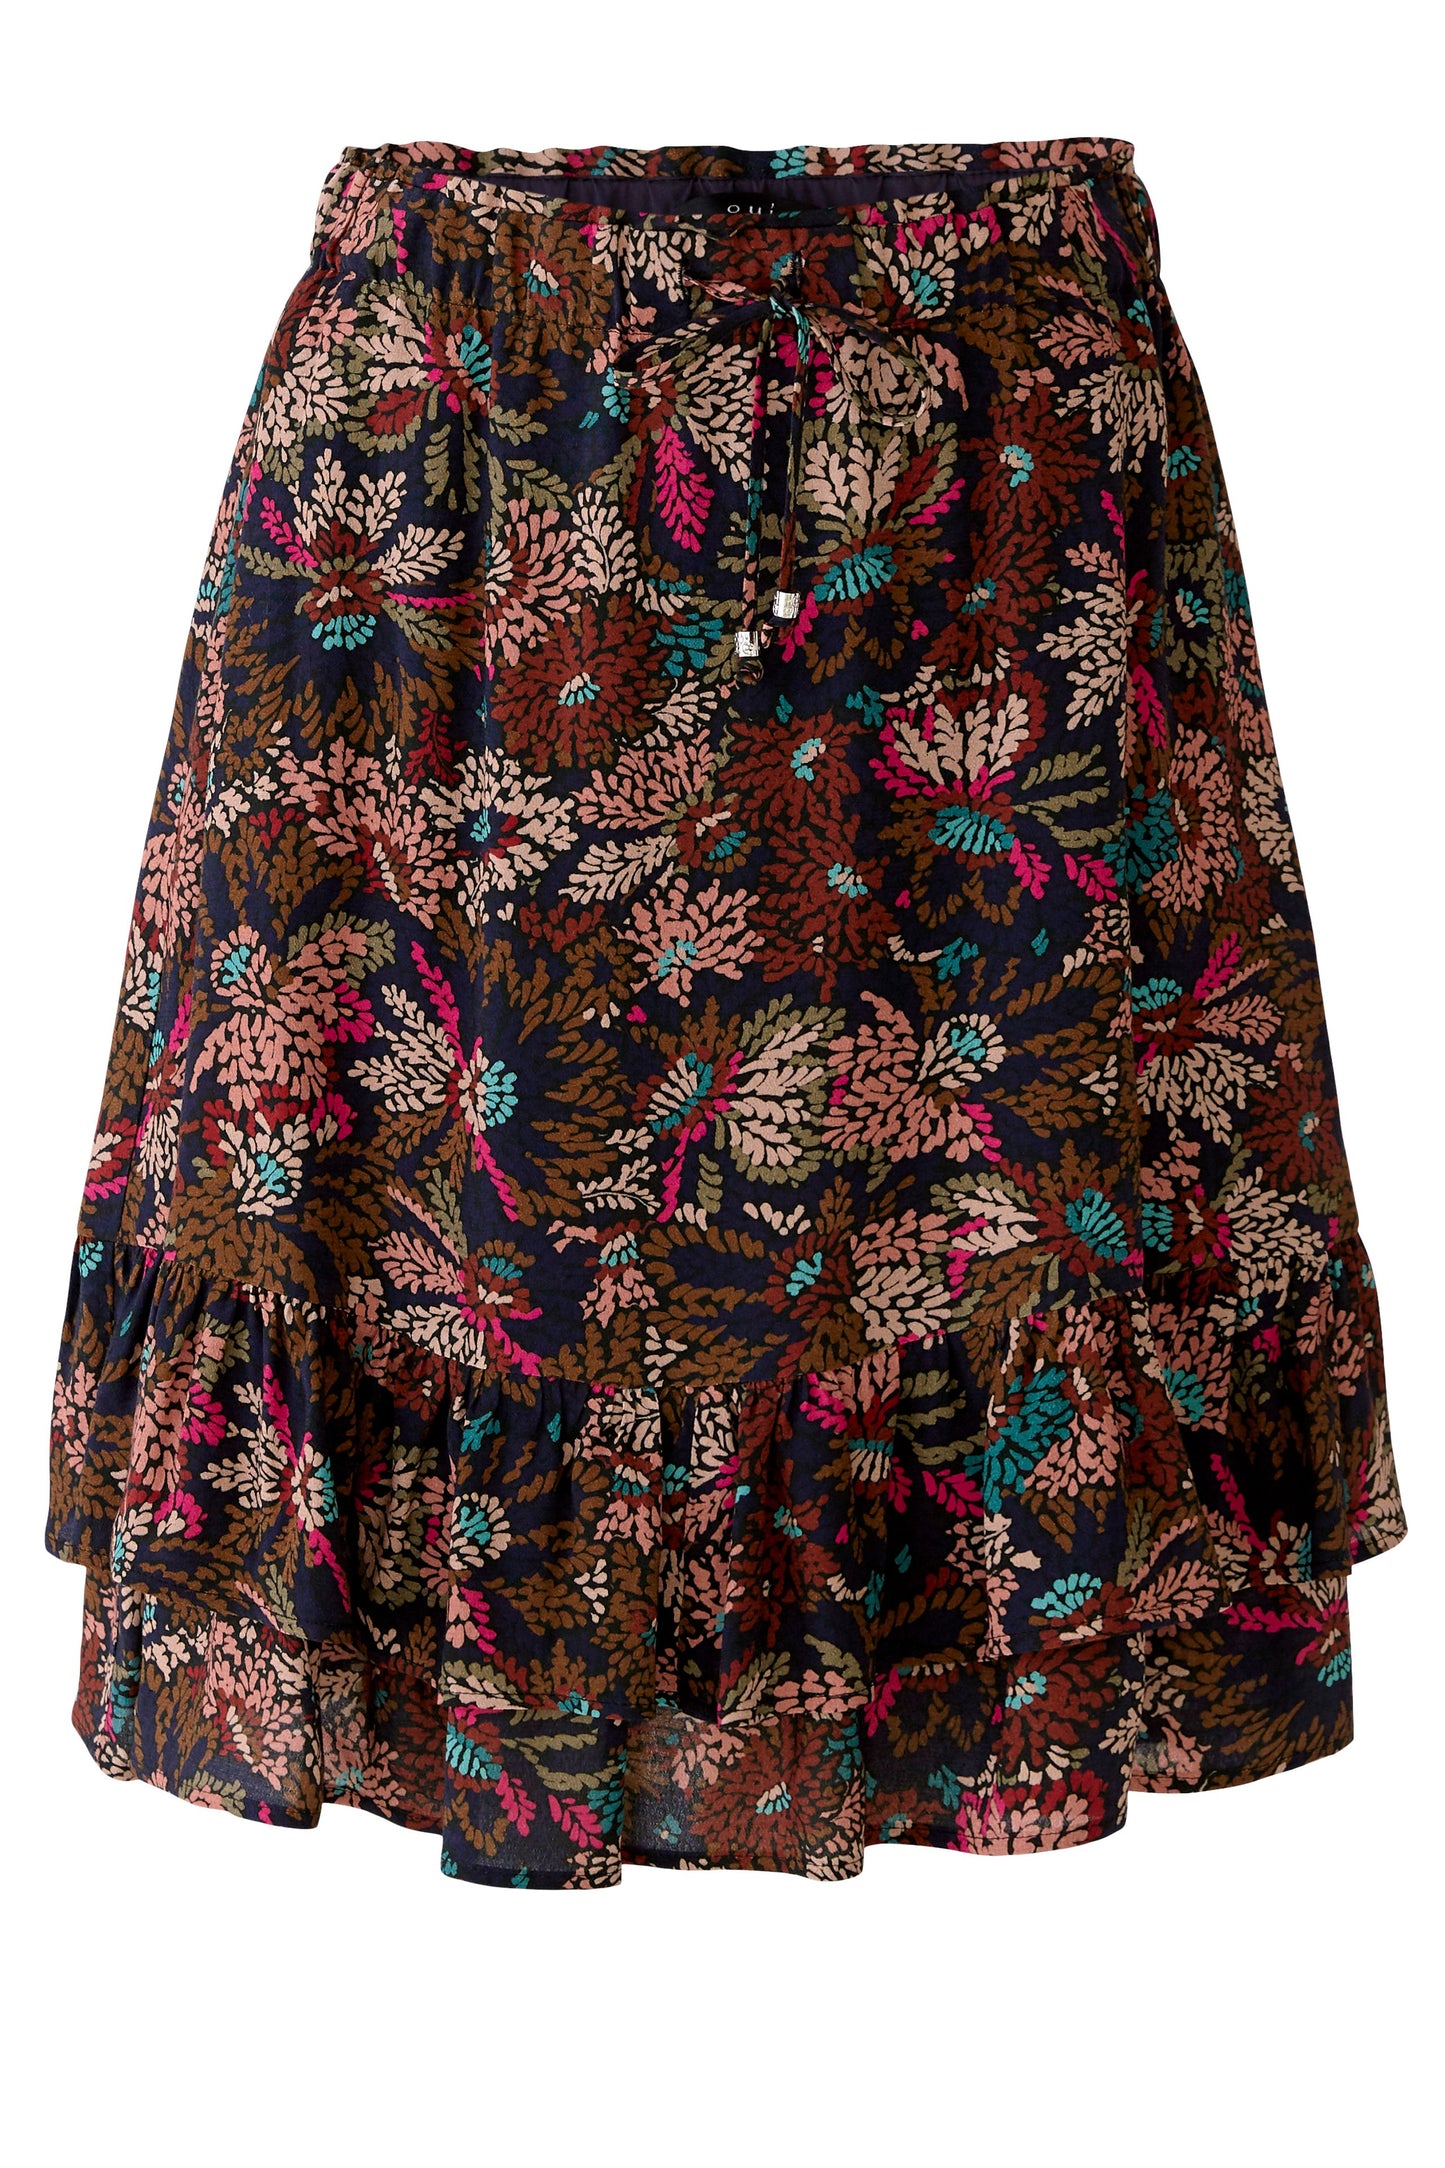 Rosey Skirt